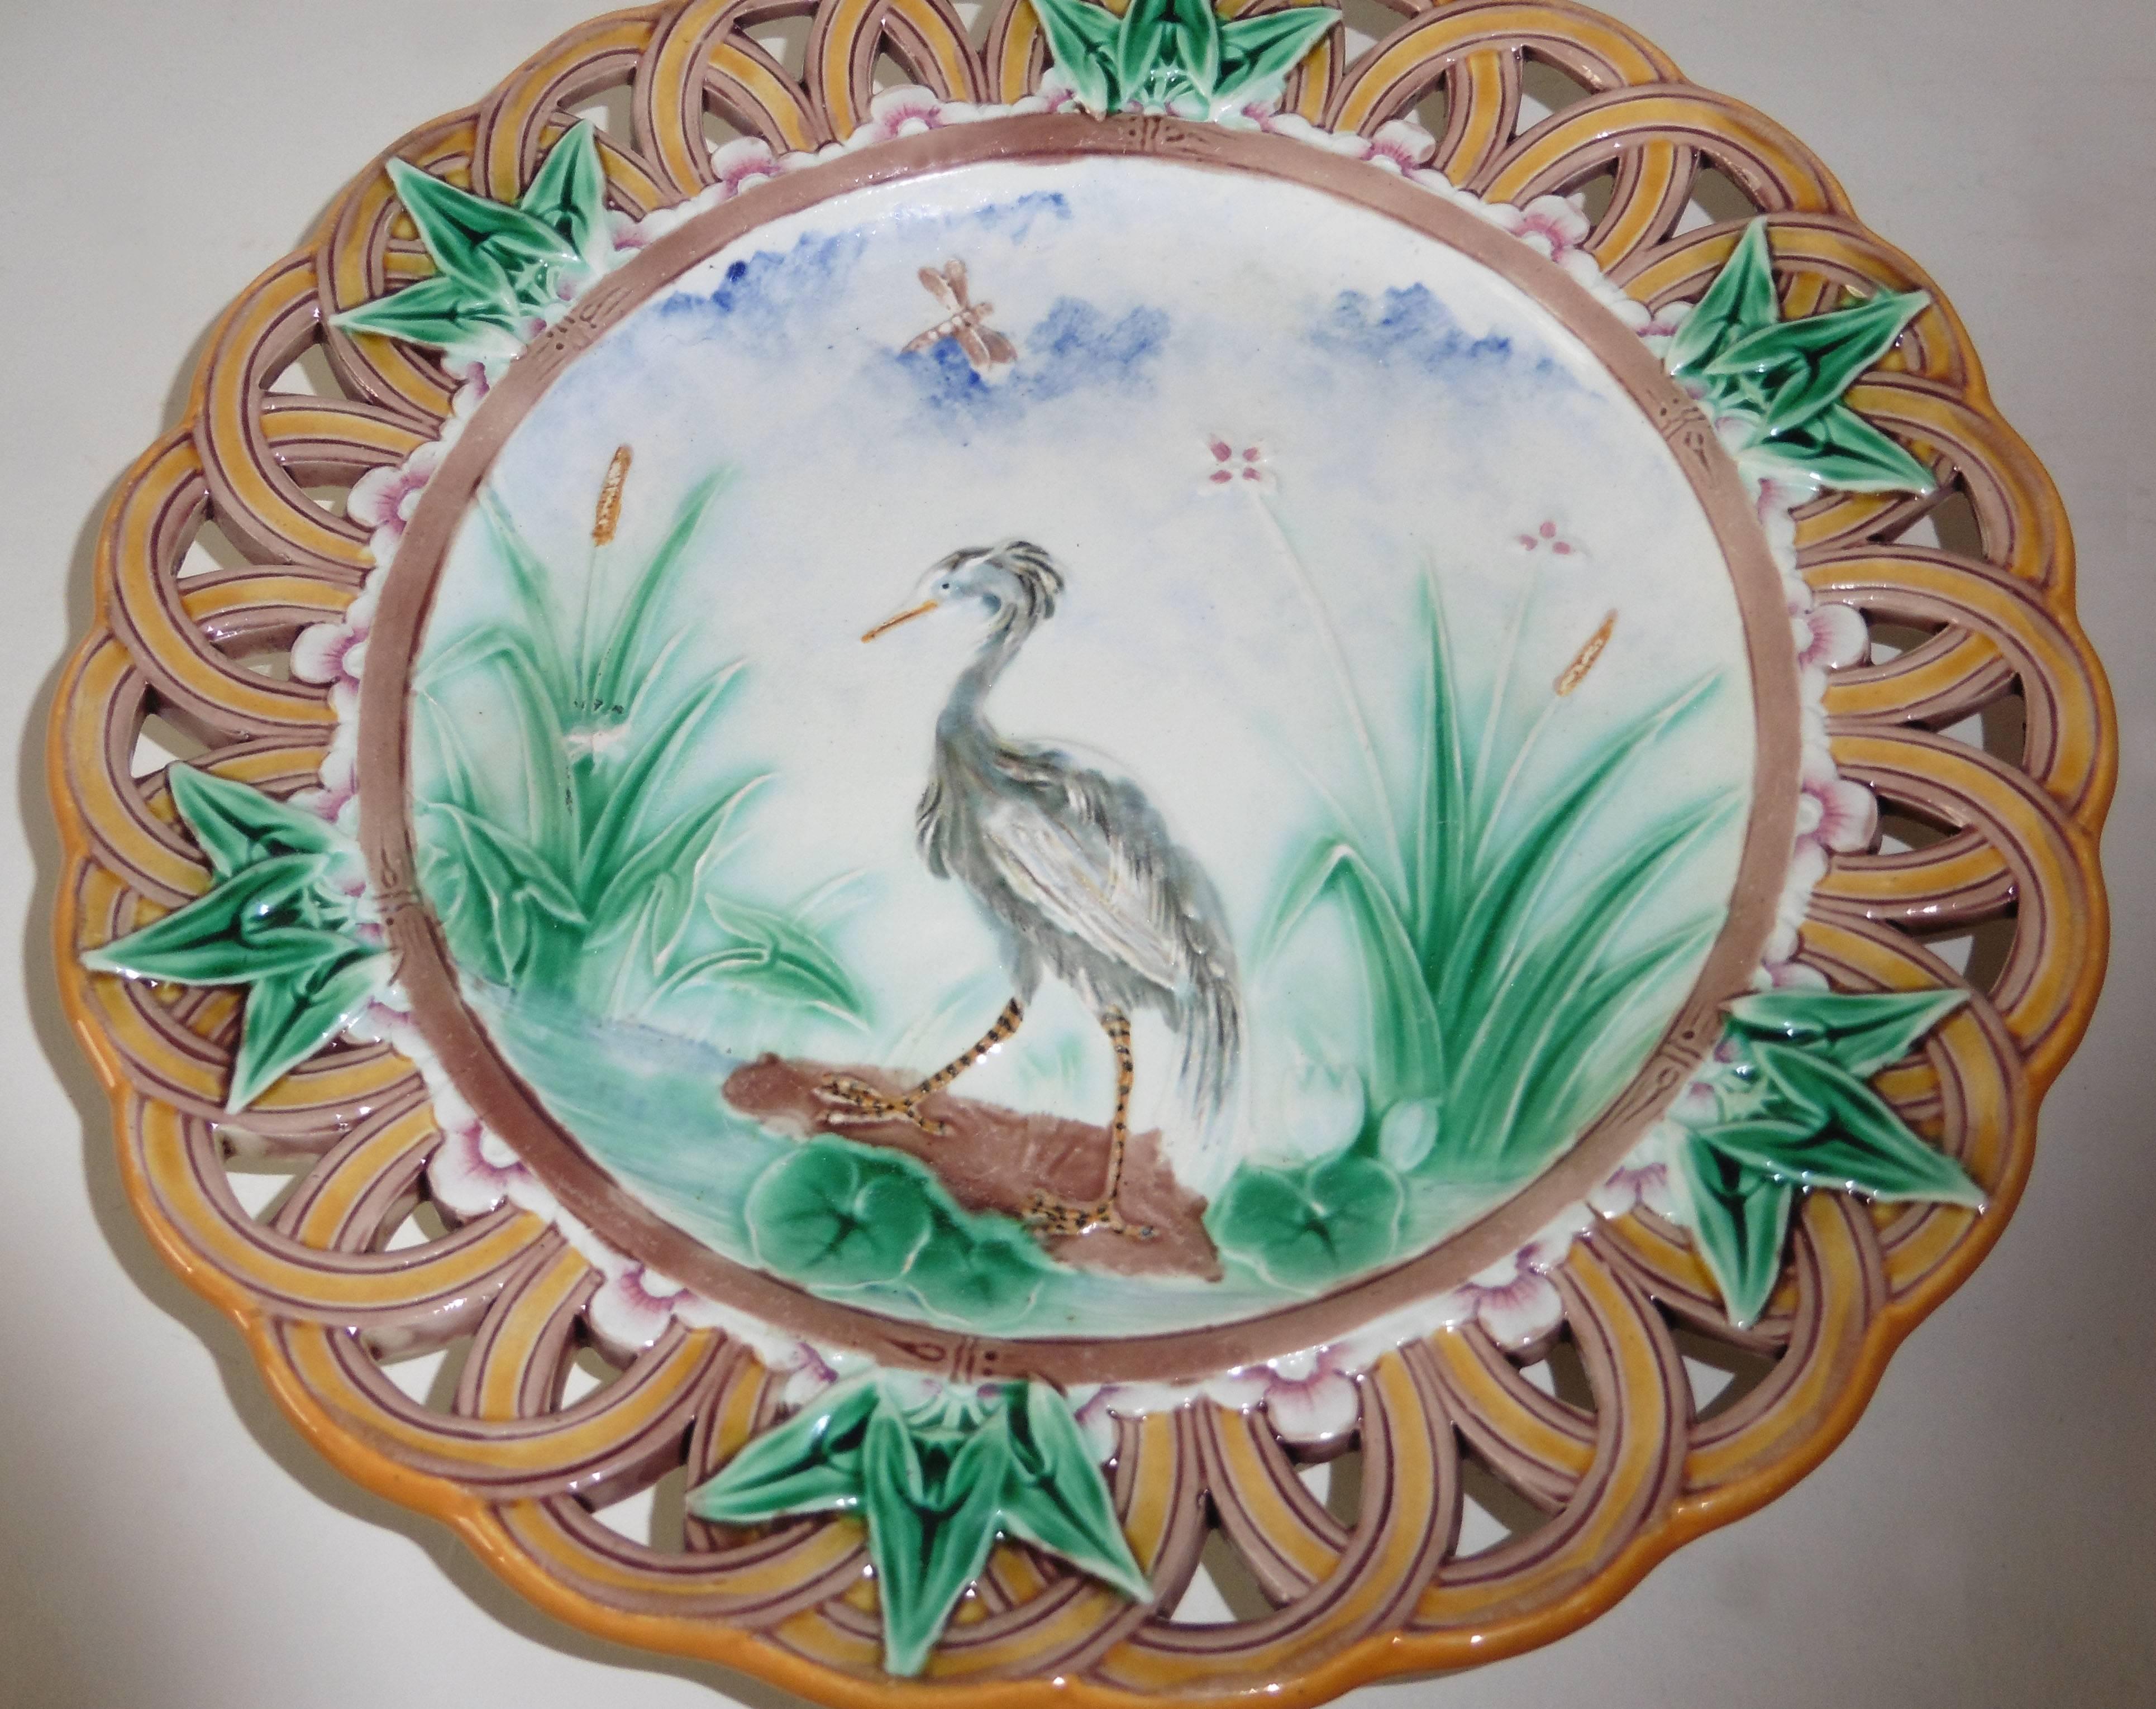 Une fine assiette réticulée en majolique victorienne signée Wedgwood.
La bordure est décorée de feuilles de lierre, le centre est un paysage avec un héron près d'un étang.